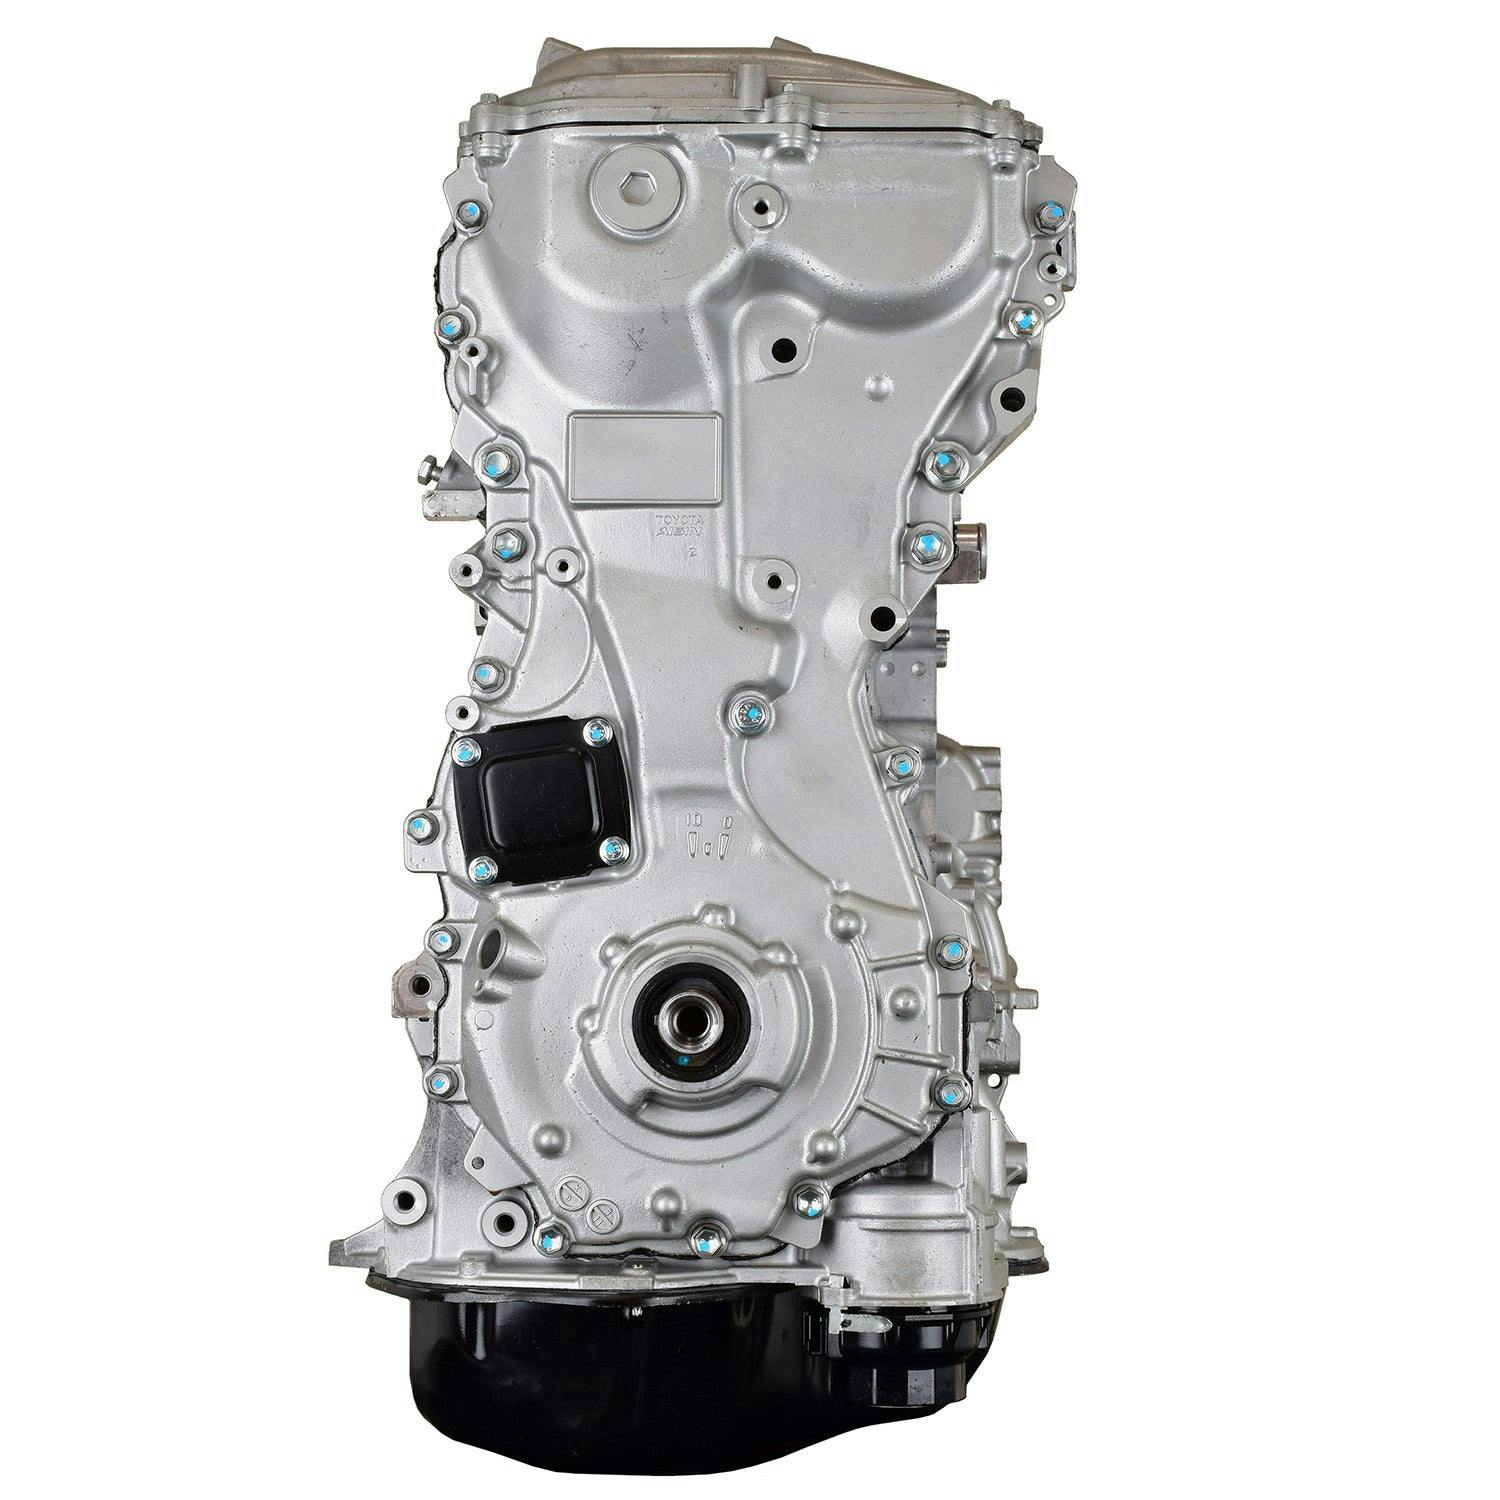 2.7L Inline-4 Engine for 2009-2019 Toyota Highlander/Sienna/Venza